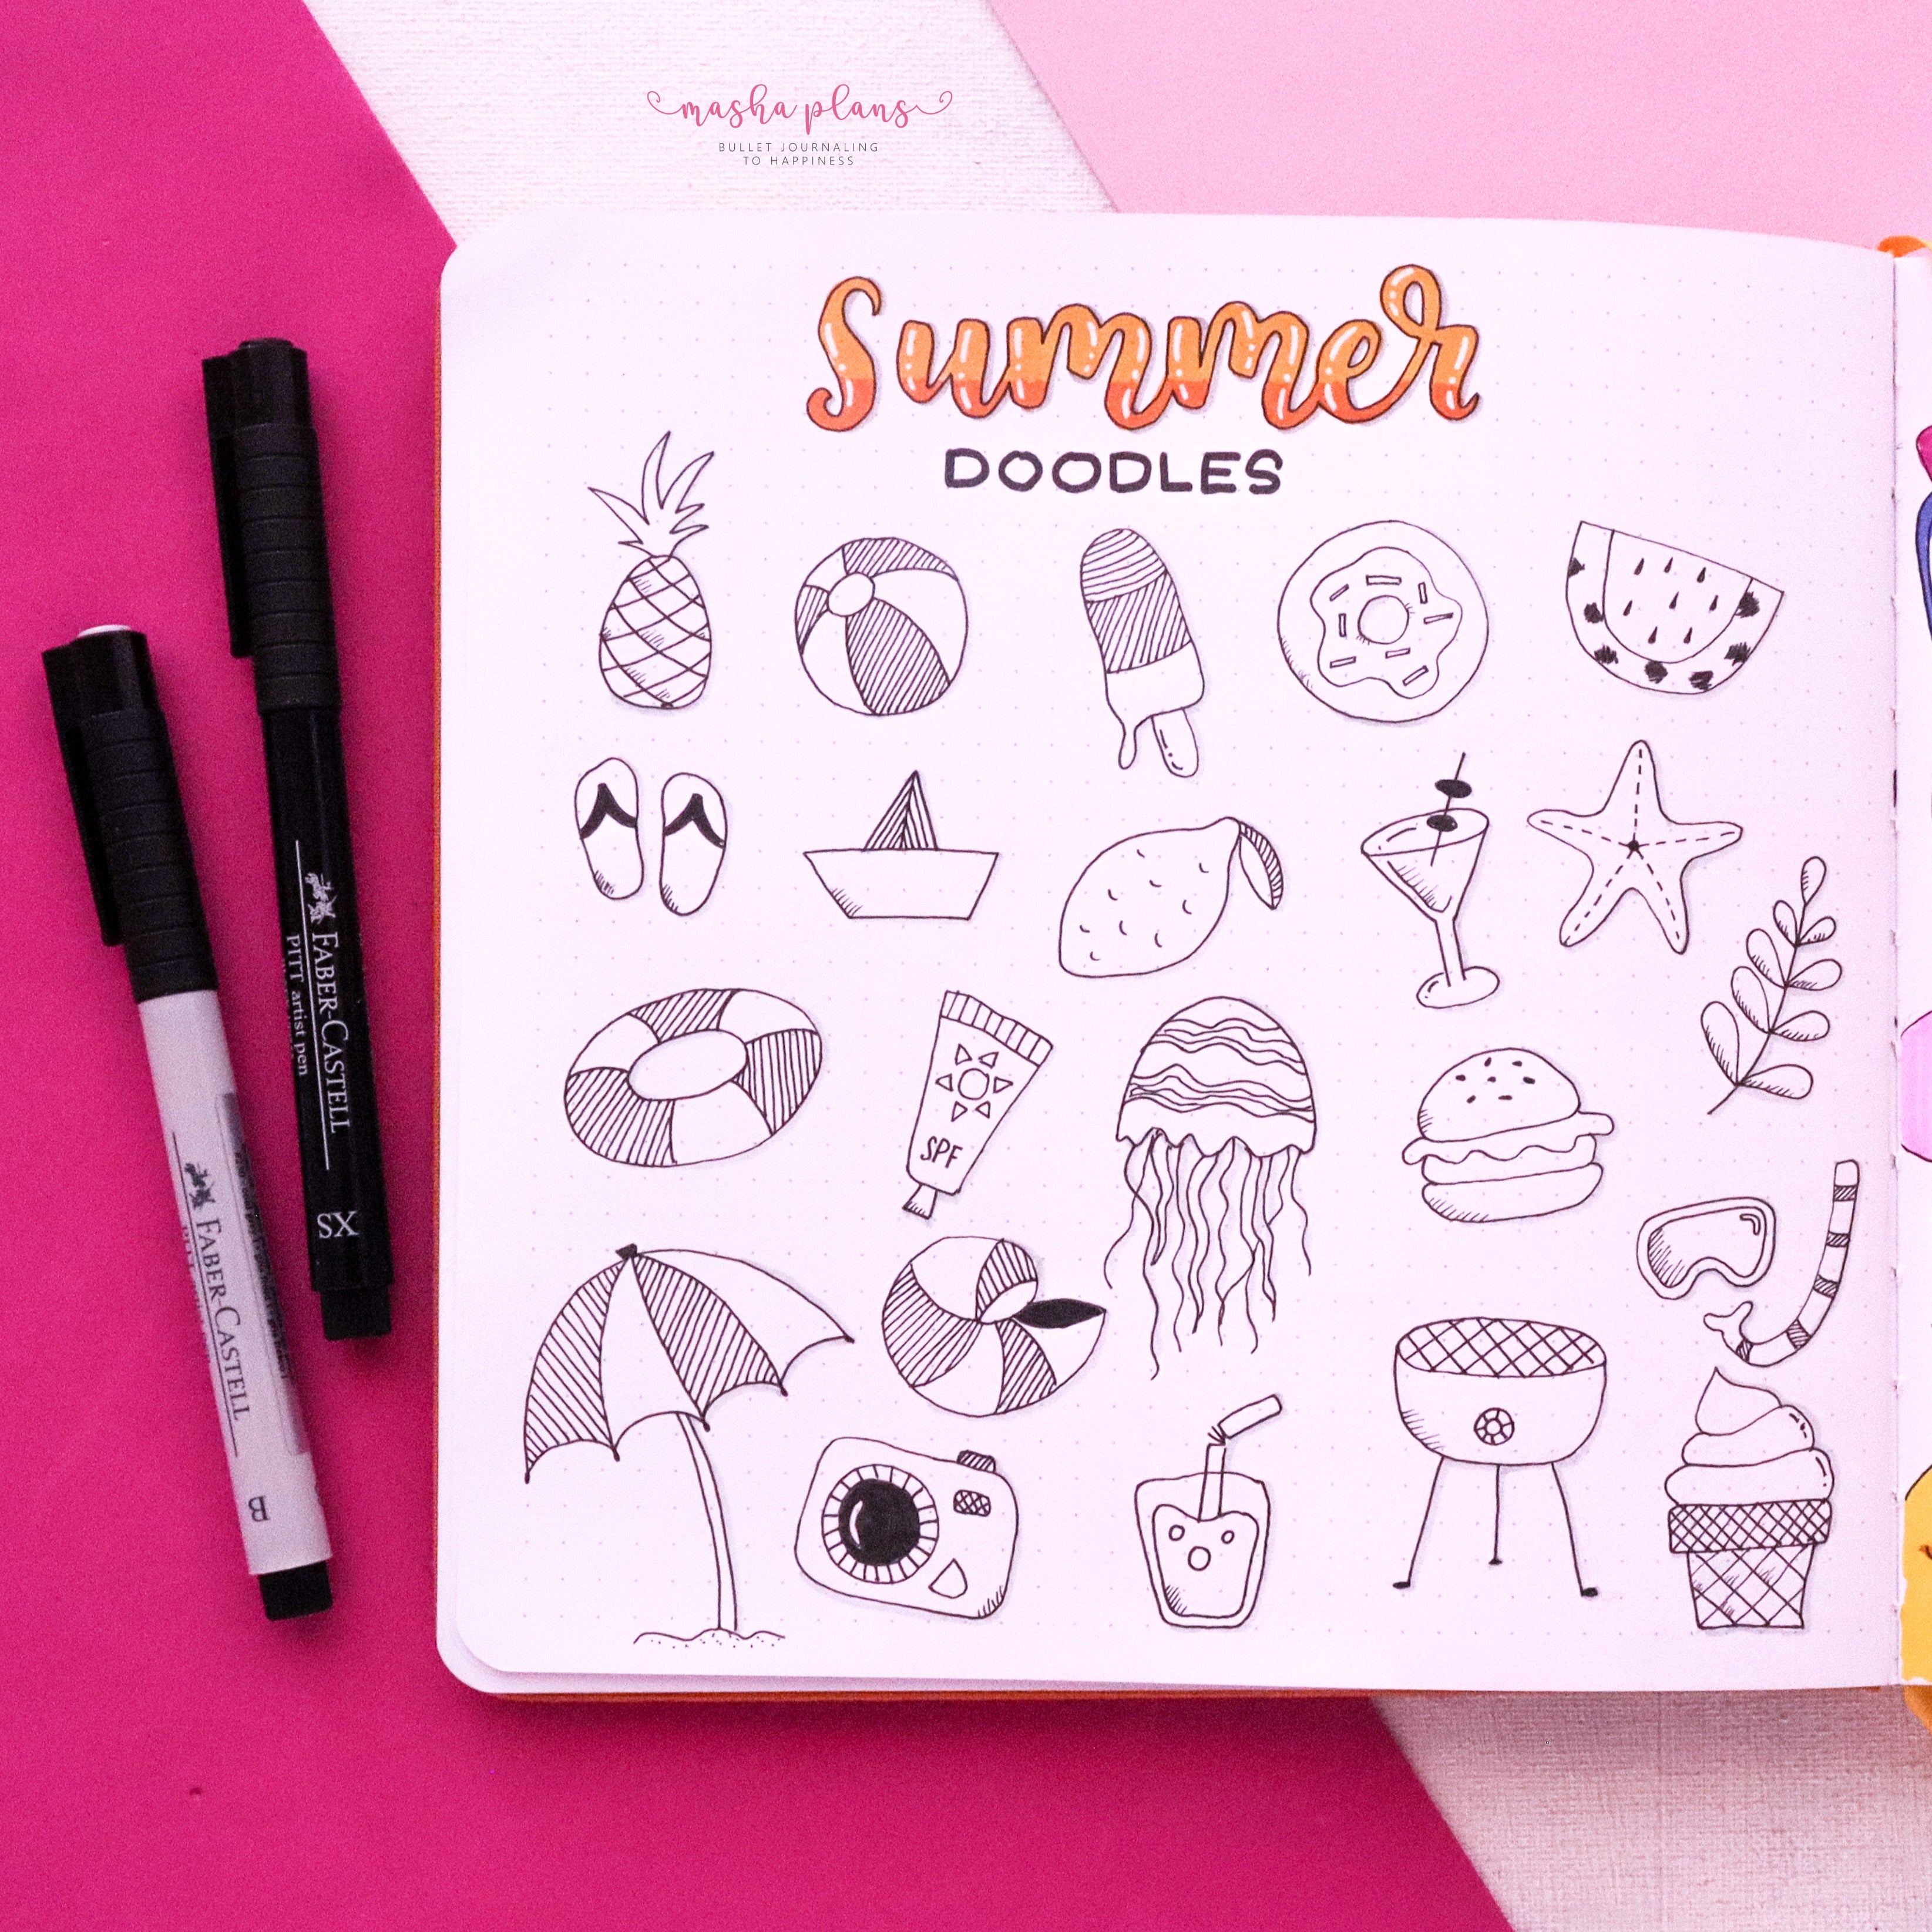 summer doodles, bullet journal doodles, masha plans, doodles, archer and olive